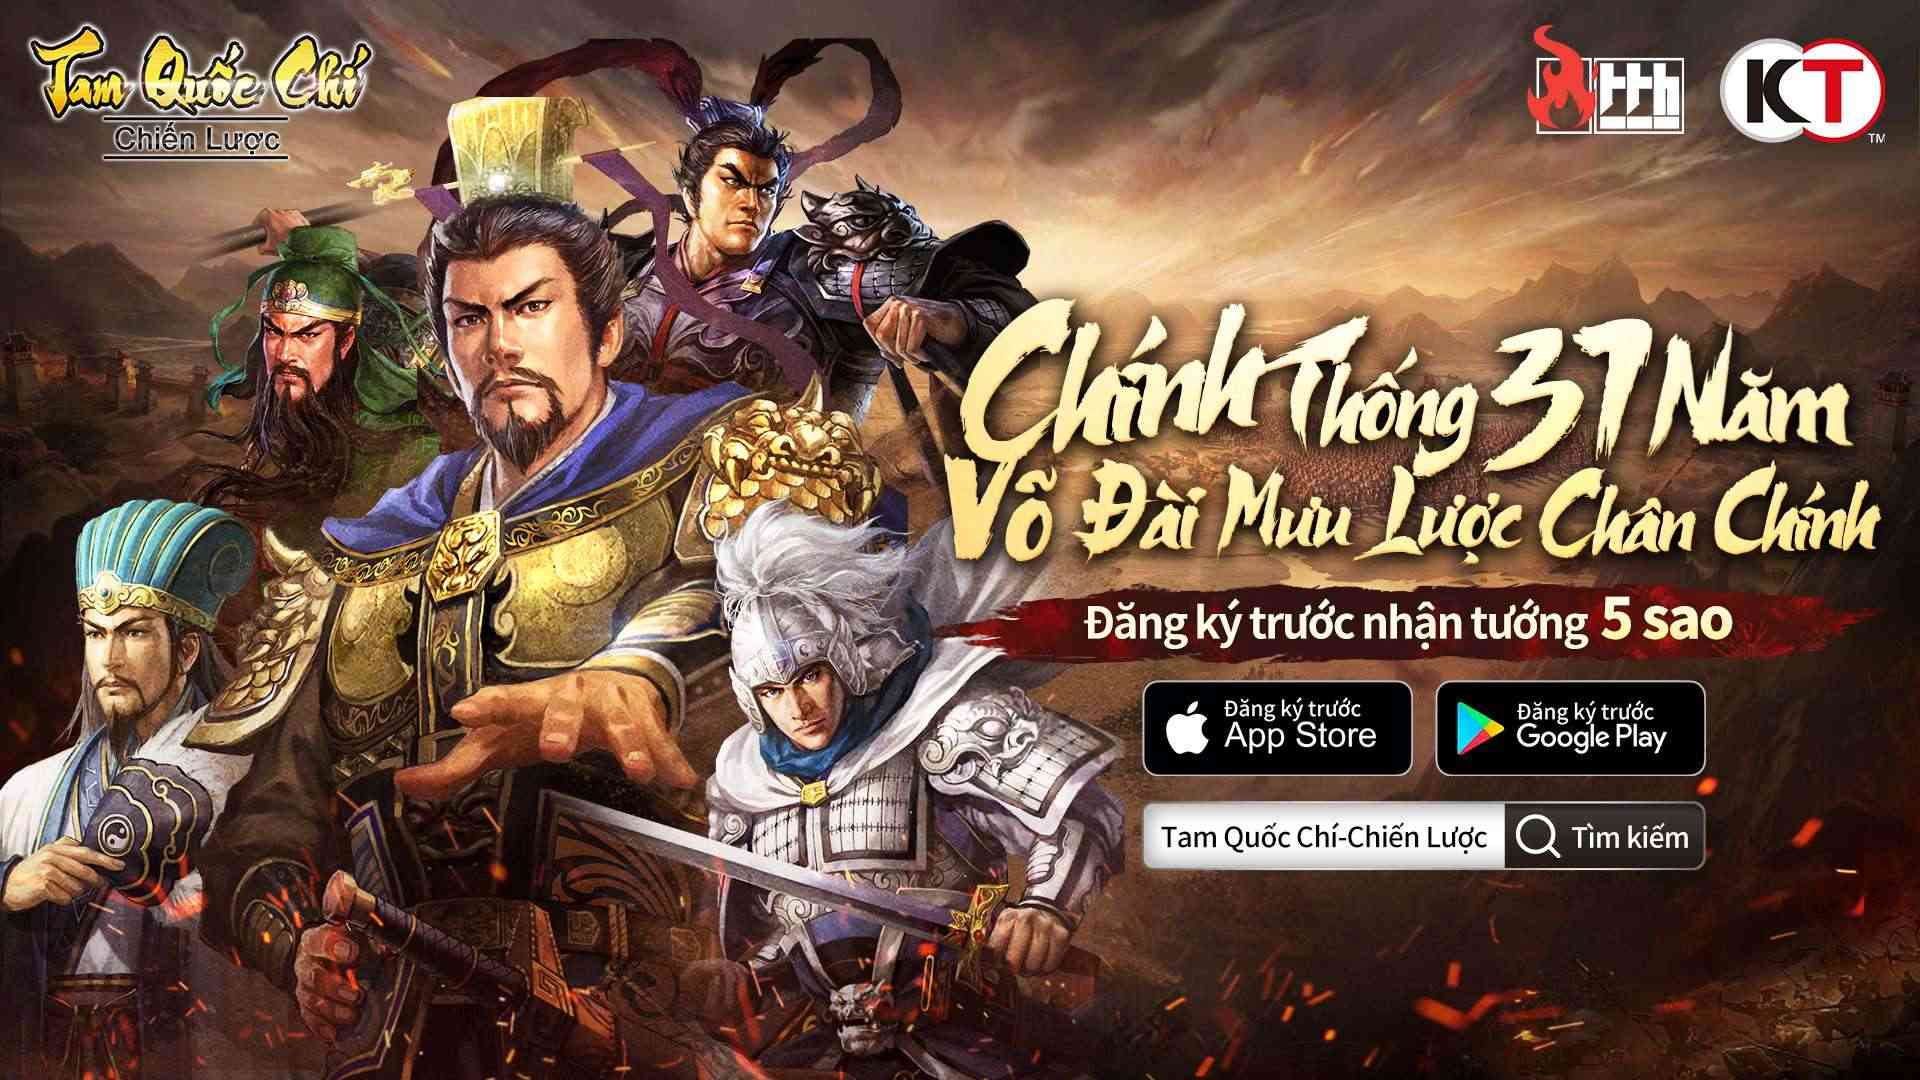 Tam Quốc Chí – Chiến Lược tổ chức họp báo online, mời game thủ trải nghiệm lối chơi chiến thuật đỉnh cao